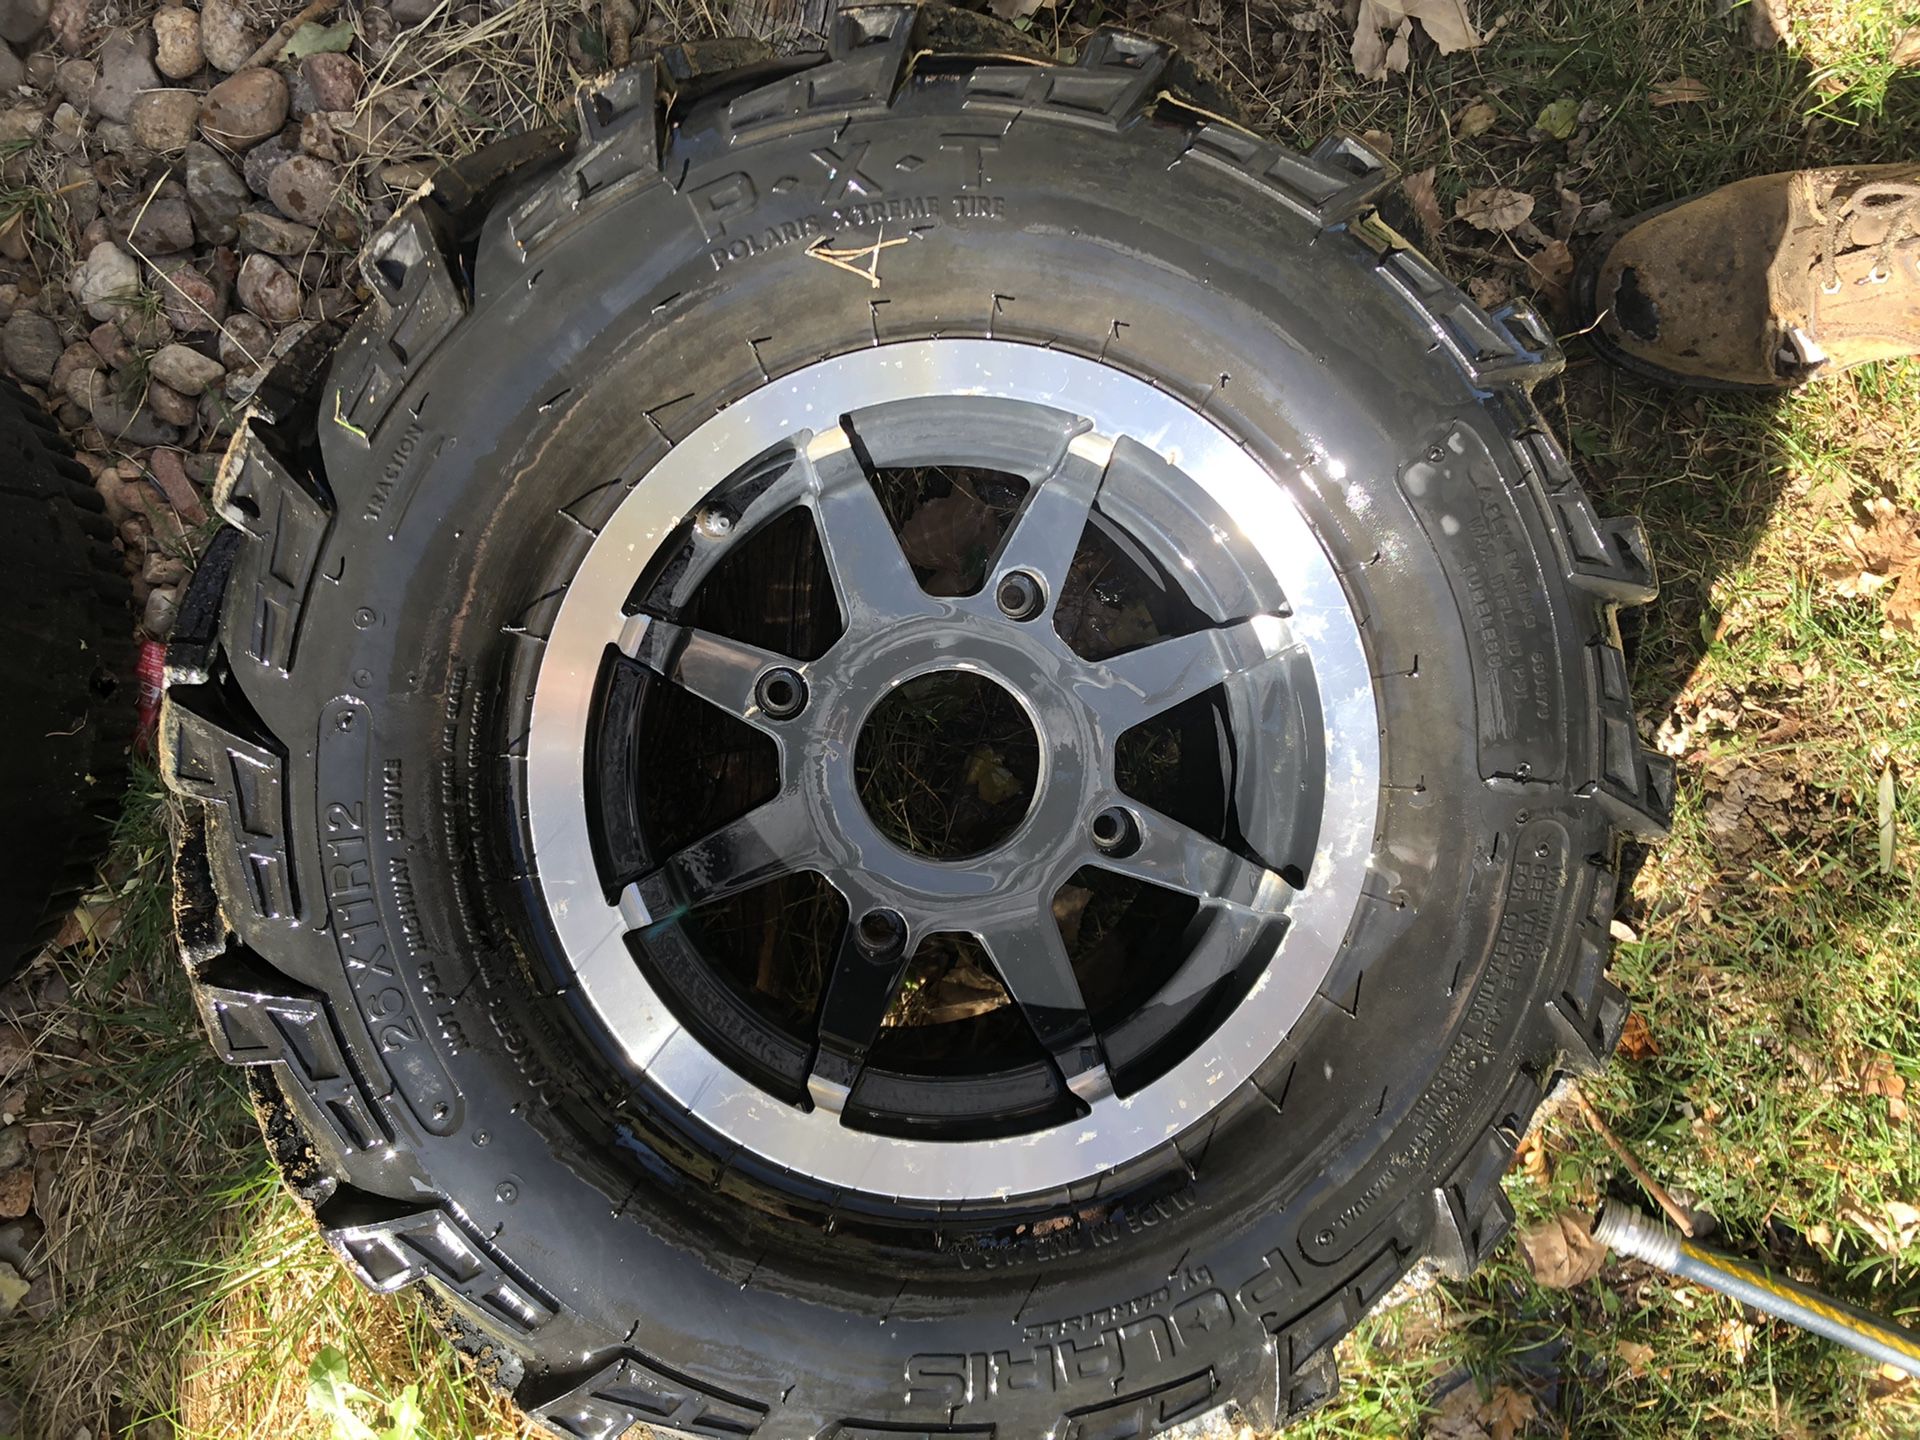 One Polaris extreme tire and rim 26x11 r 12 was off a Polaris Ranger 4 lug wheel